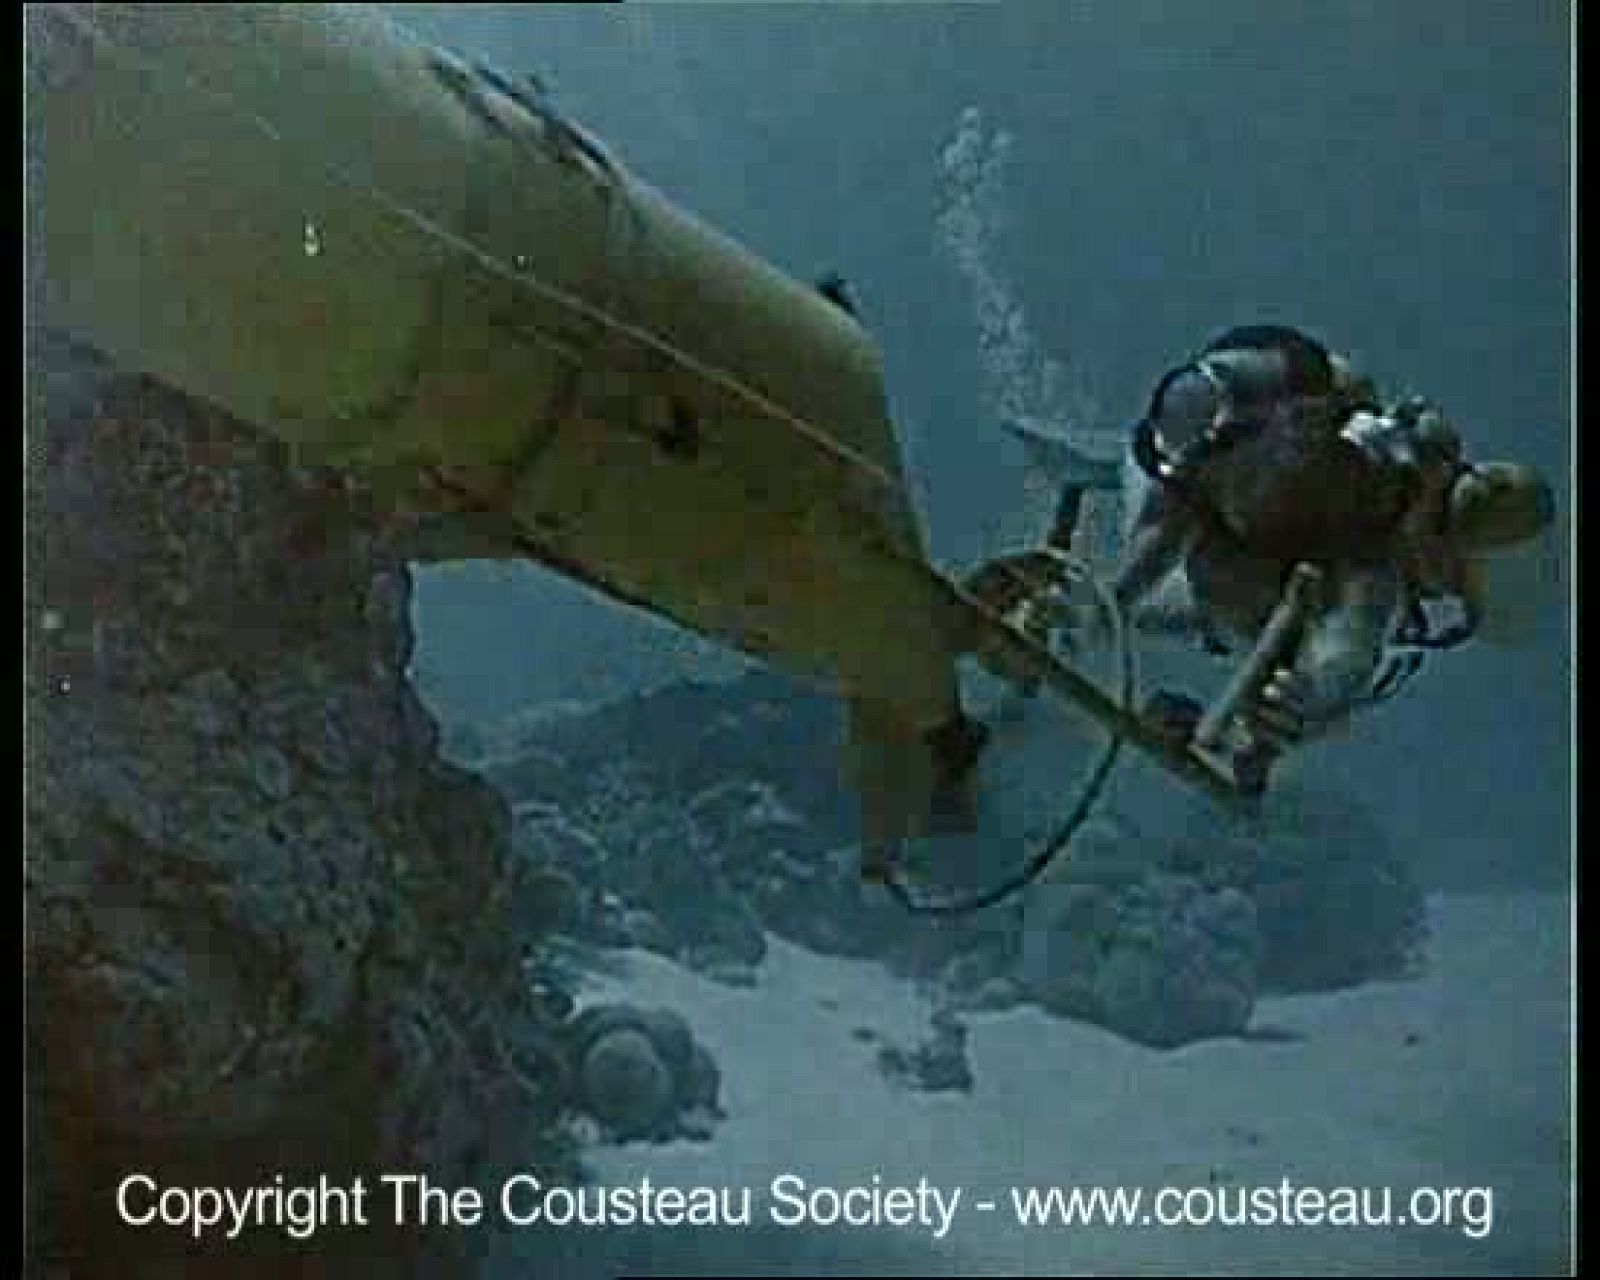 Inventos y tecnología del Capitán Cousteau